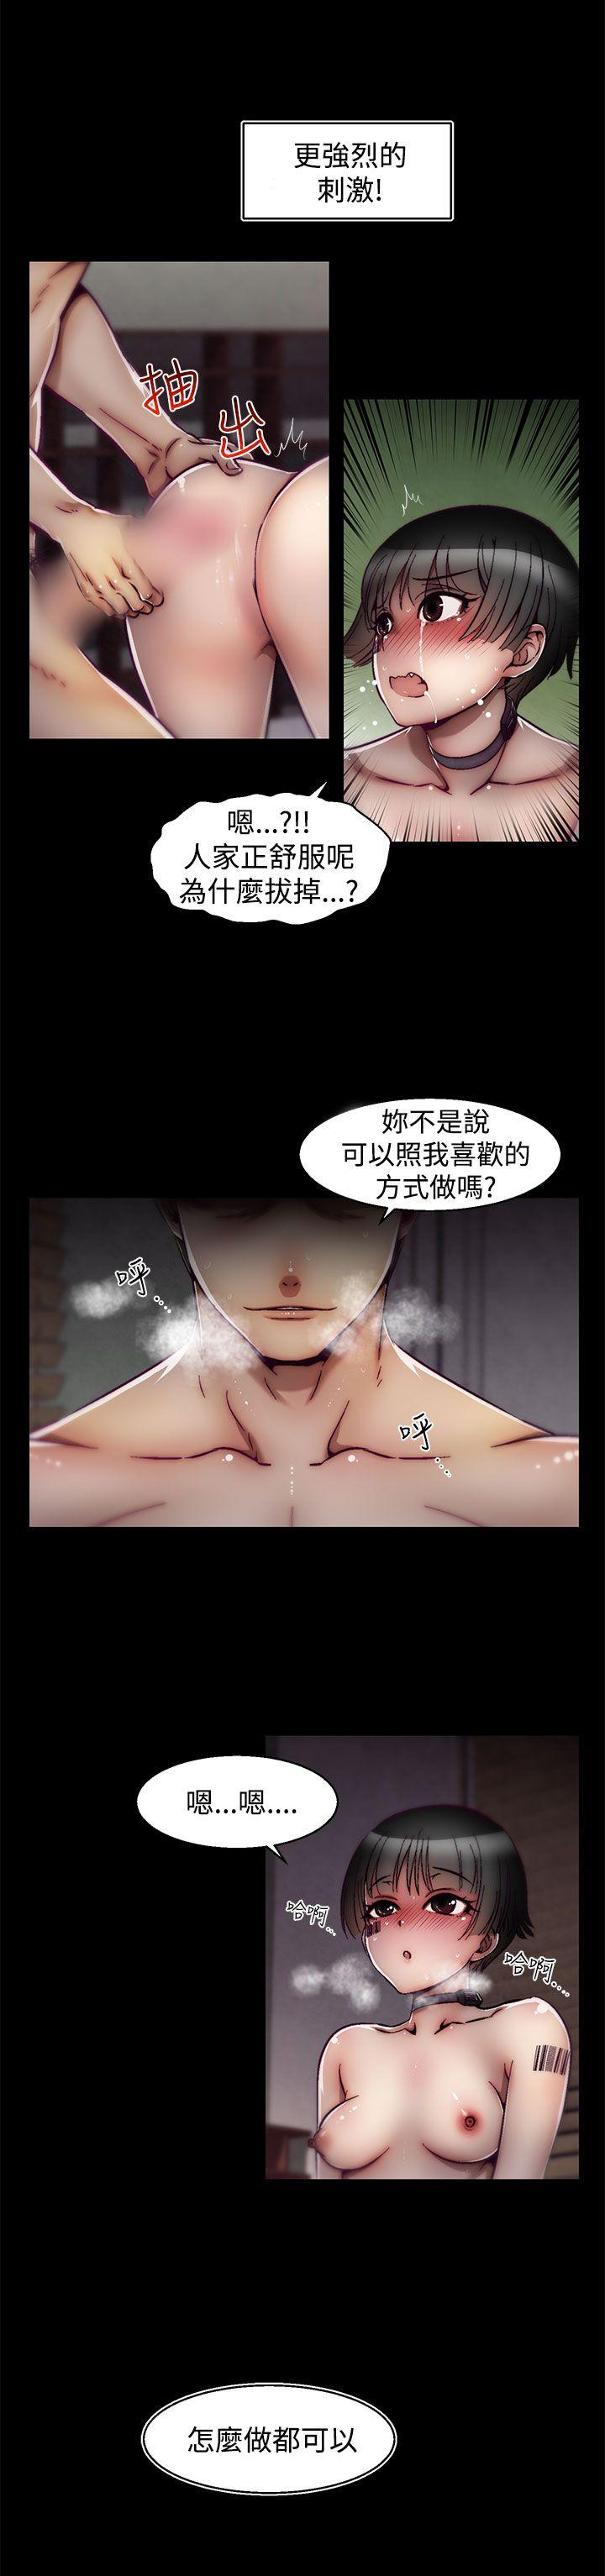 韩国污漫画 啪啪啪調教所 第18话(第2季) 22